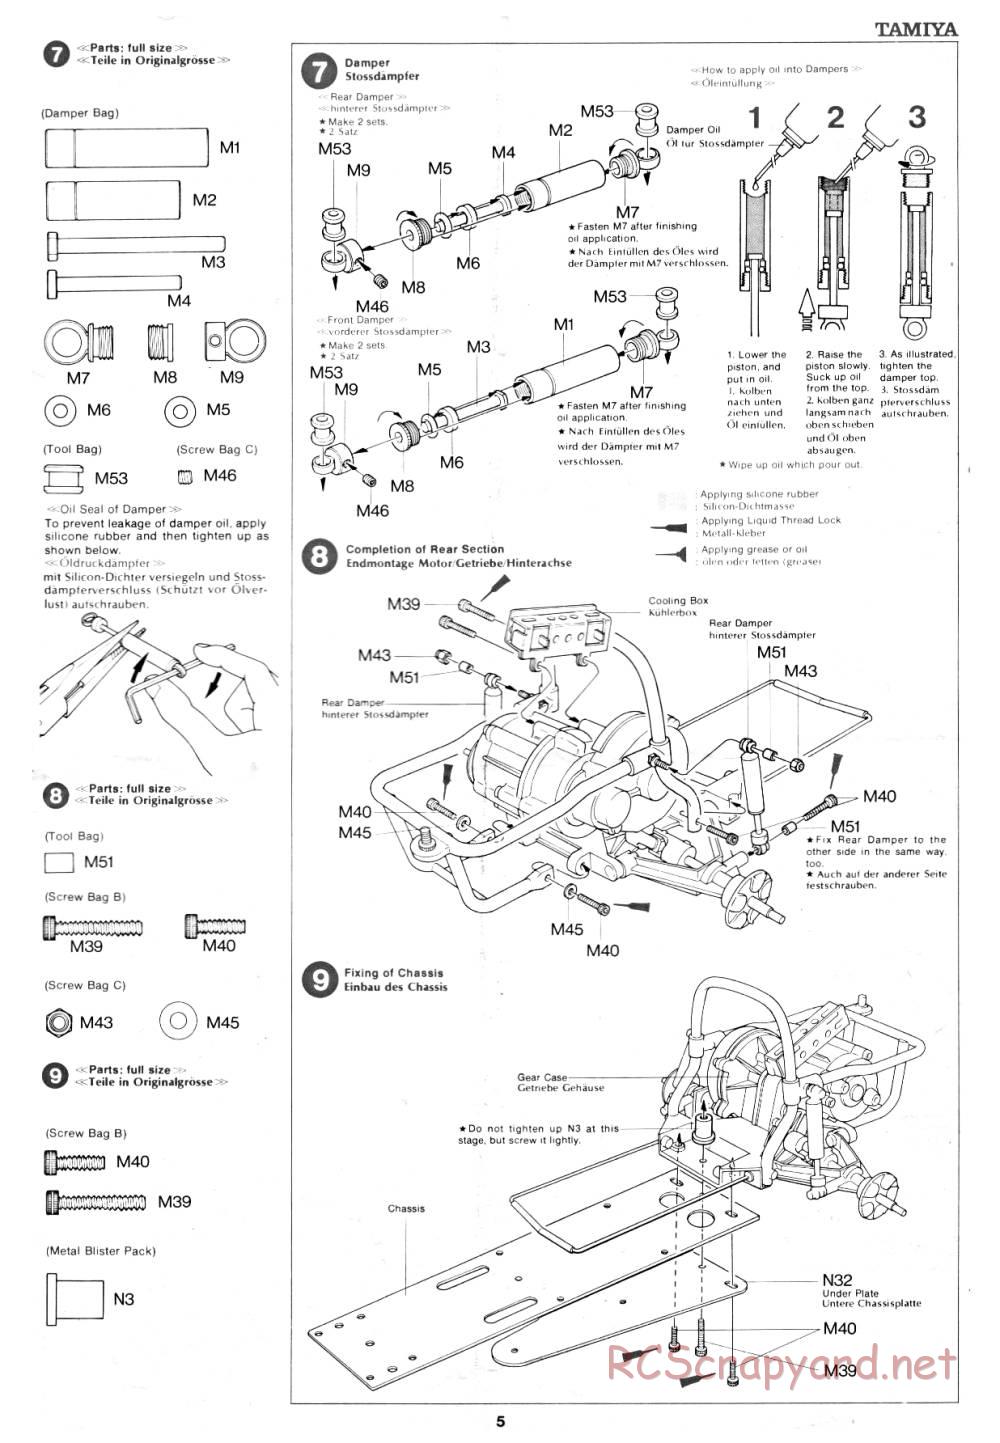 Tamiya - Rough Rider - 58015 - Manual - Page 5